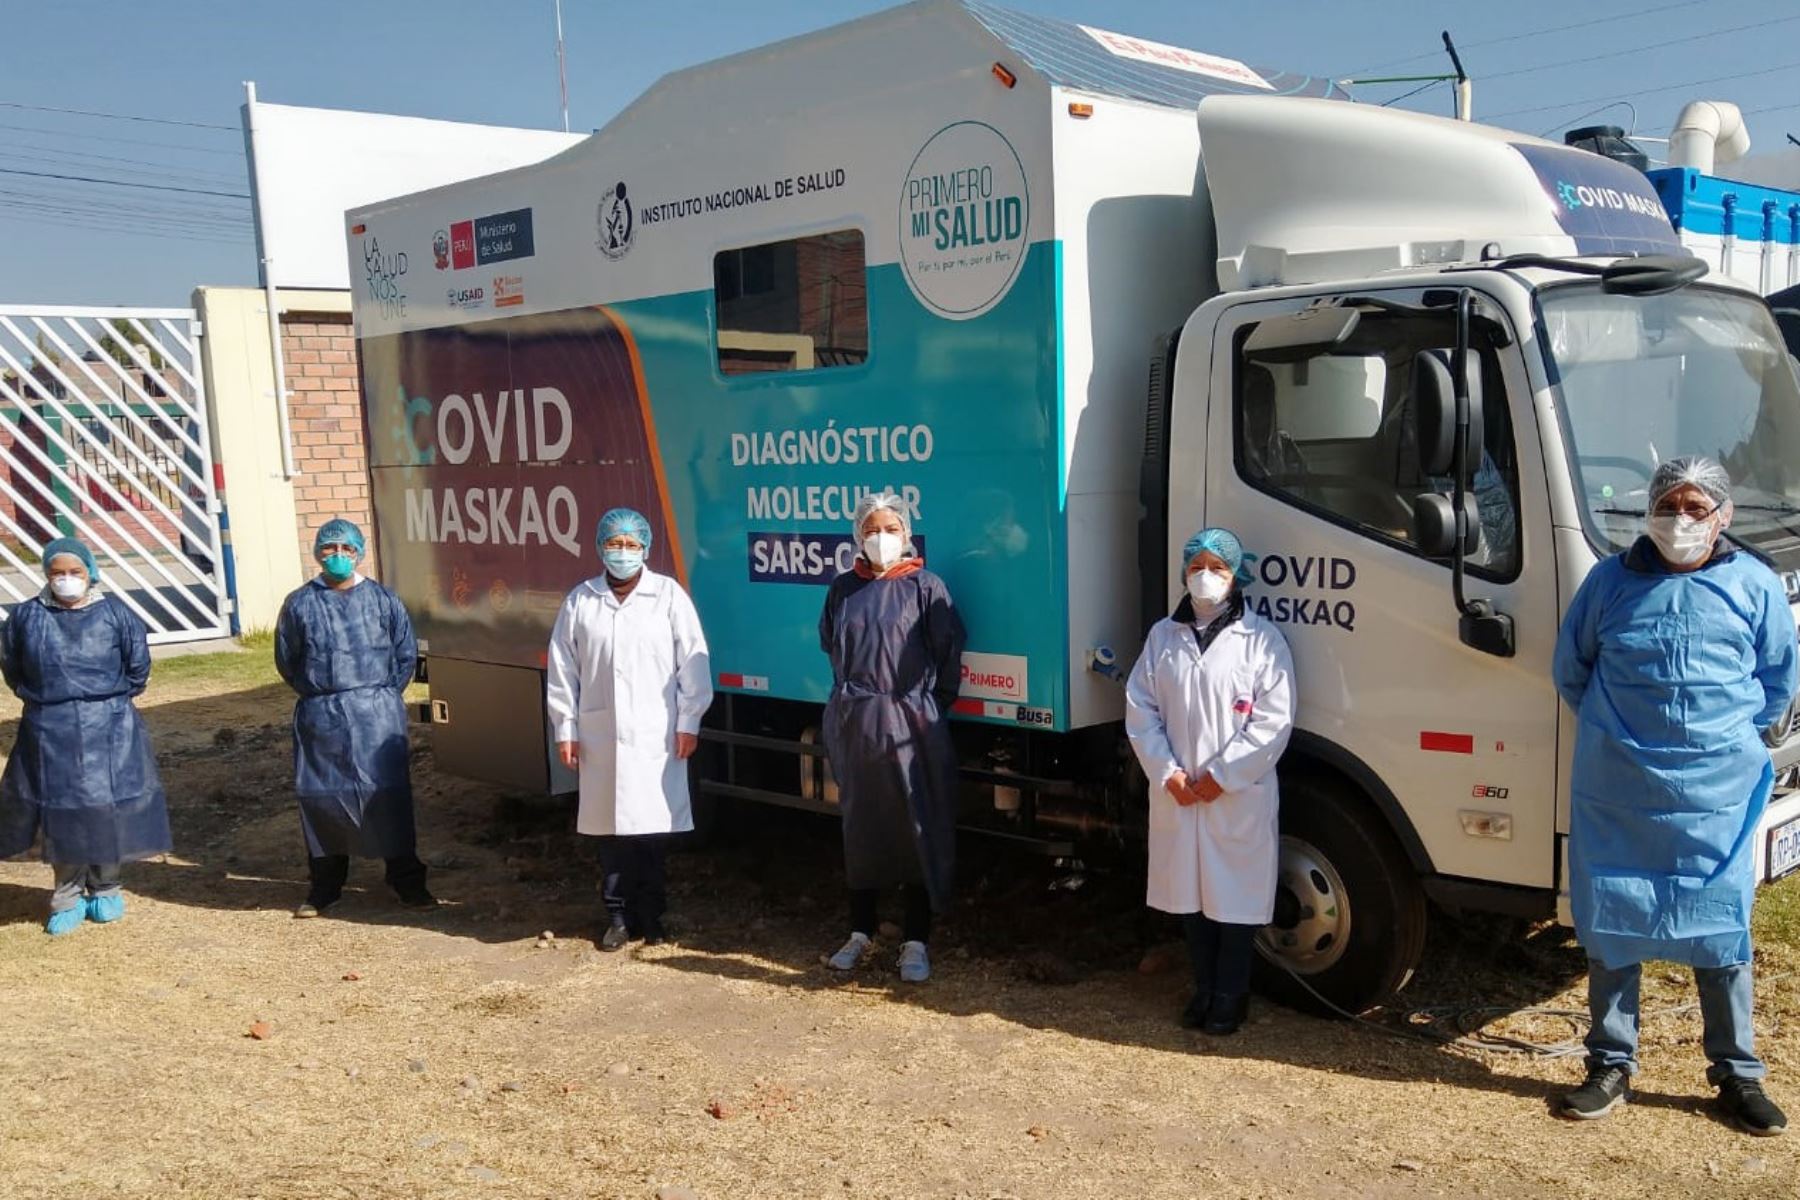 El laboratorio móvil Covid Maskaq (Buscando al covid) puede identificar activa y eficazmente los casos de SARS-CoV-2 de las muestras provenientes de los establecimientos de salud de Junín y Huancavelica. Foto: ANDINA/INS